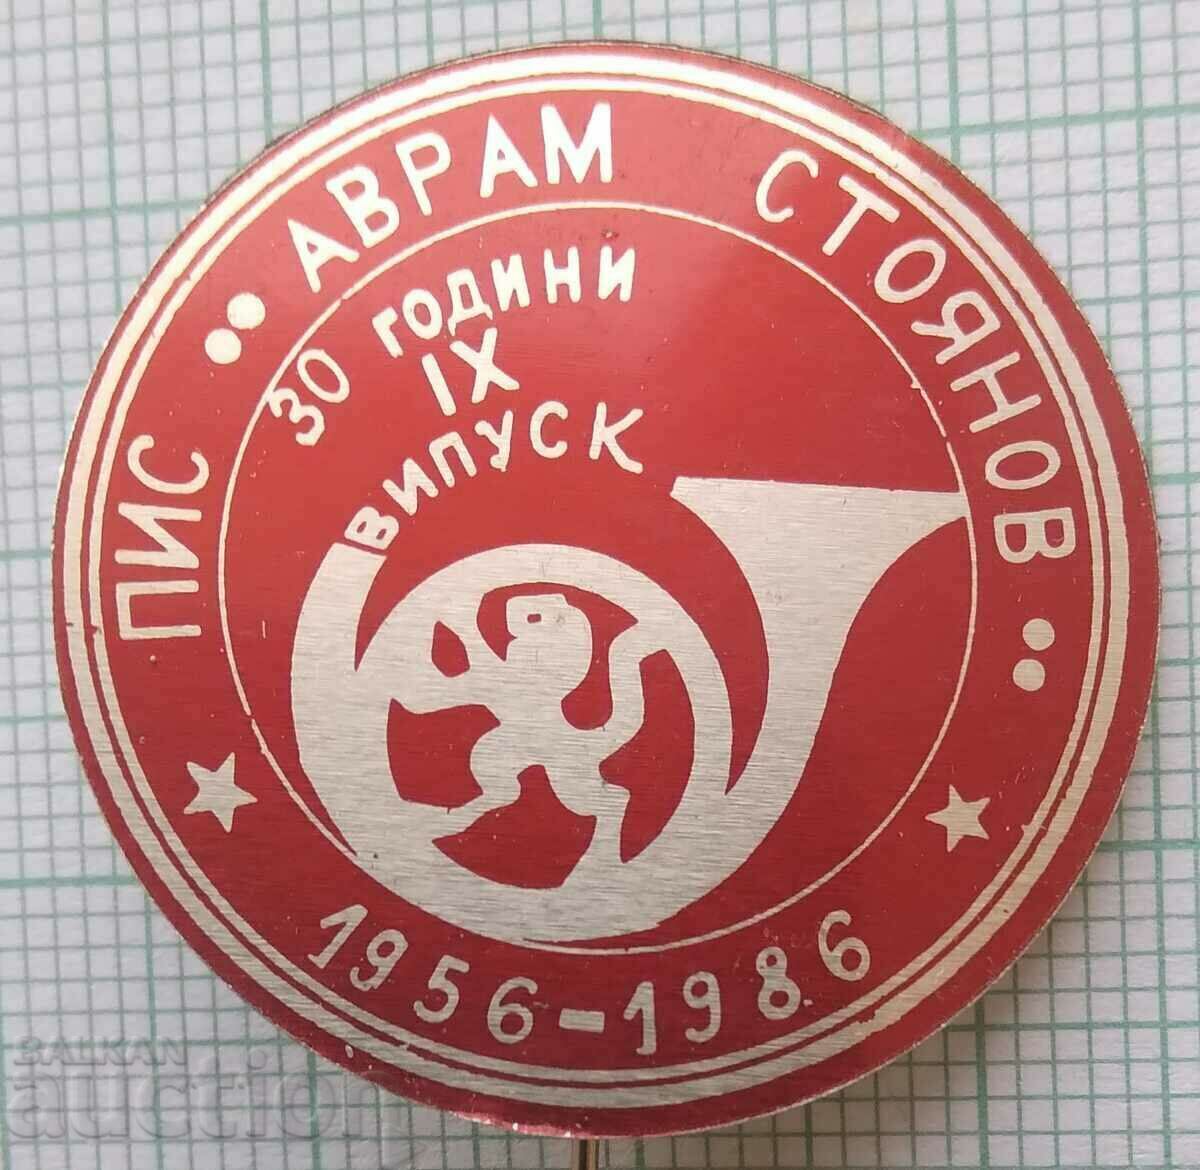 14465 Institutul Semisuperior al Comun. Avram Stoyanov - 30 de ani PIS